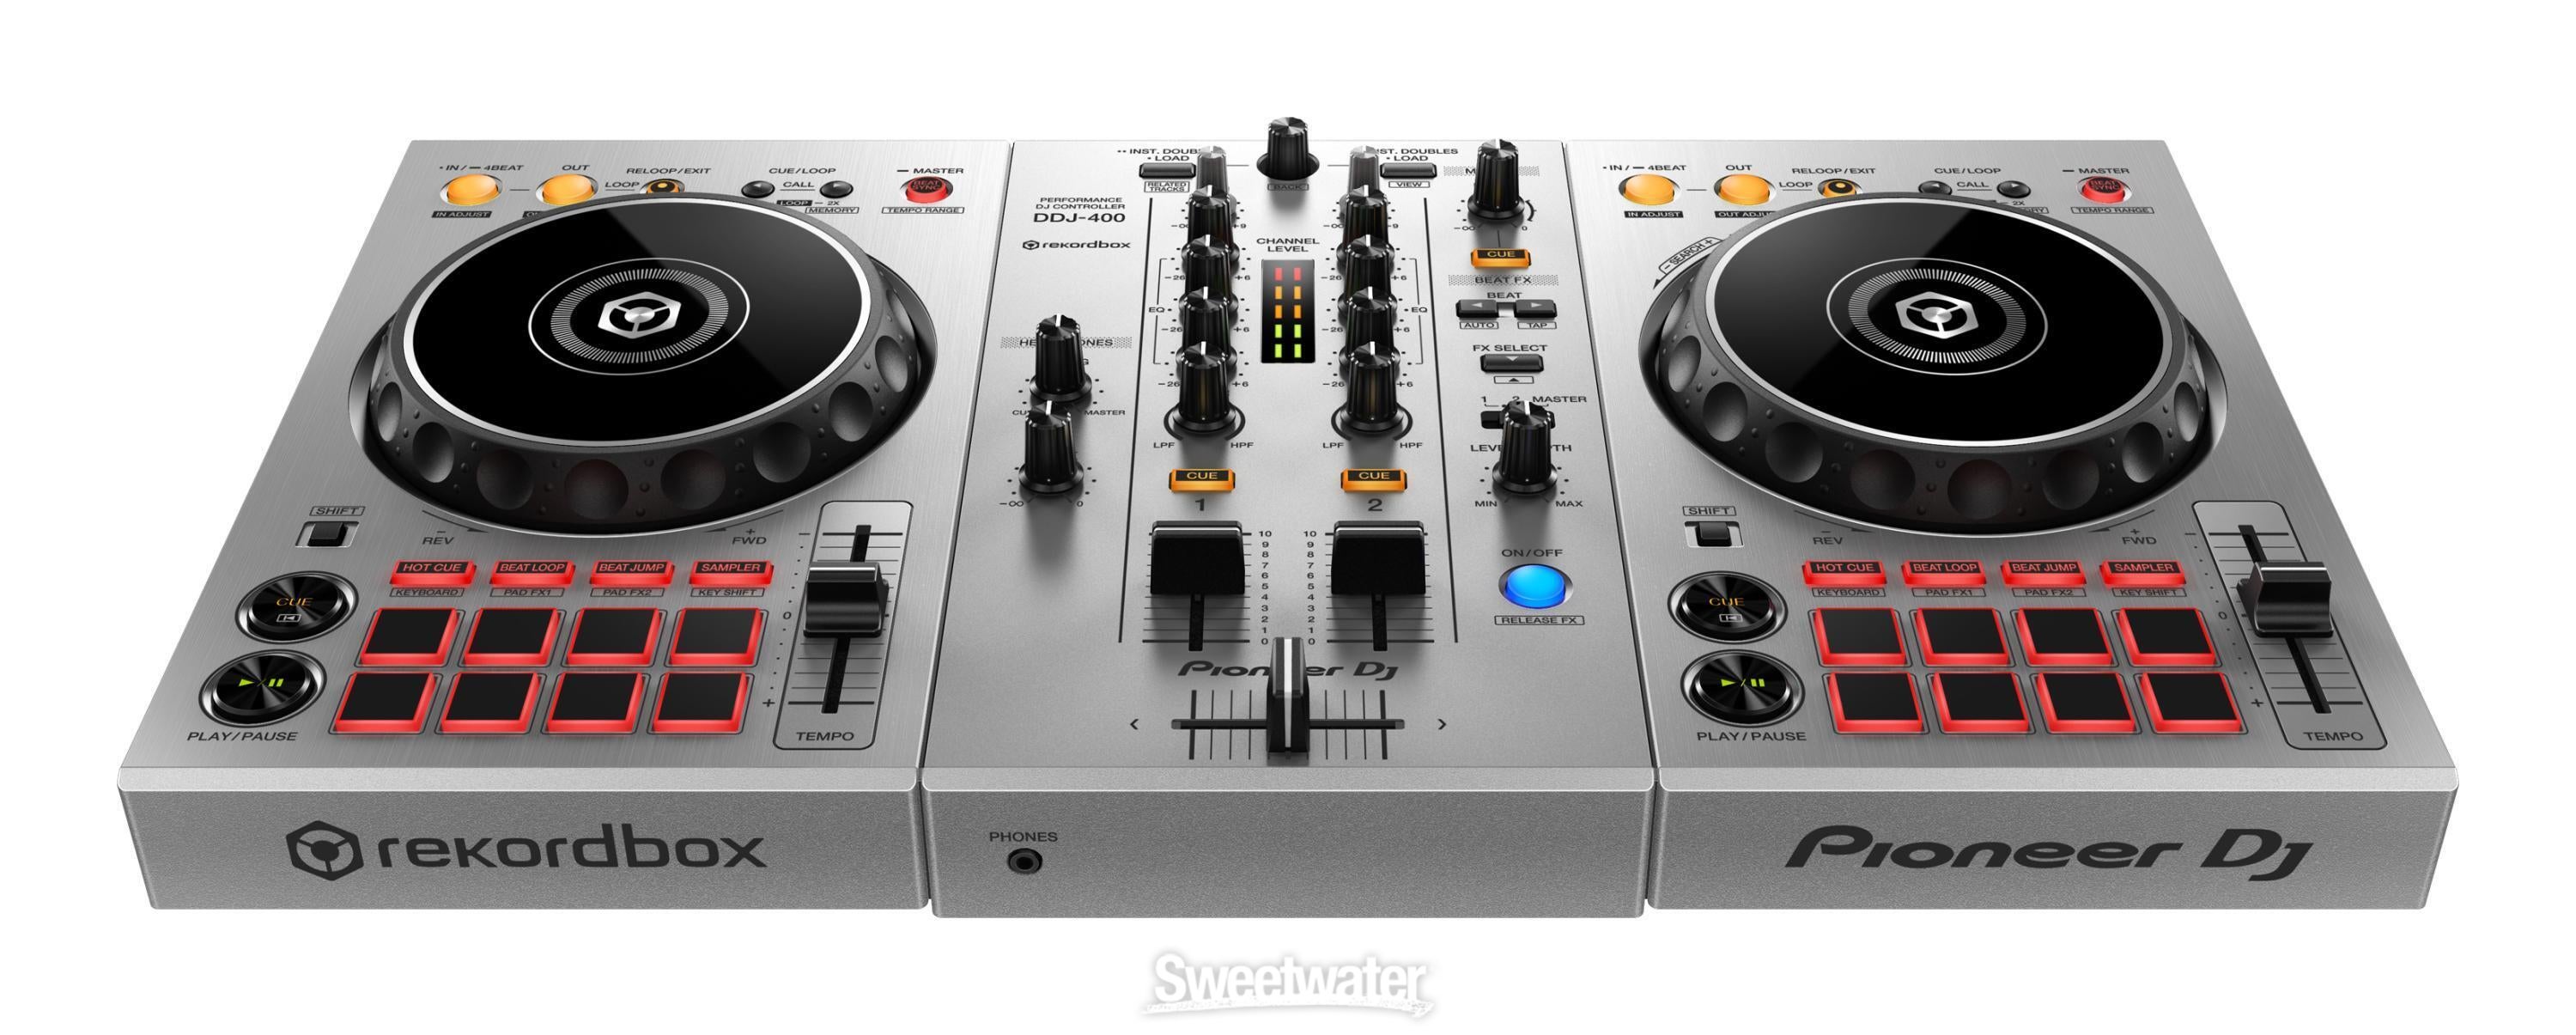 Pioneer DJ DDJ-400 2-deck Rekordbox DJ Controller - Limited 